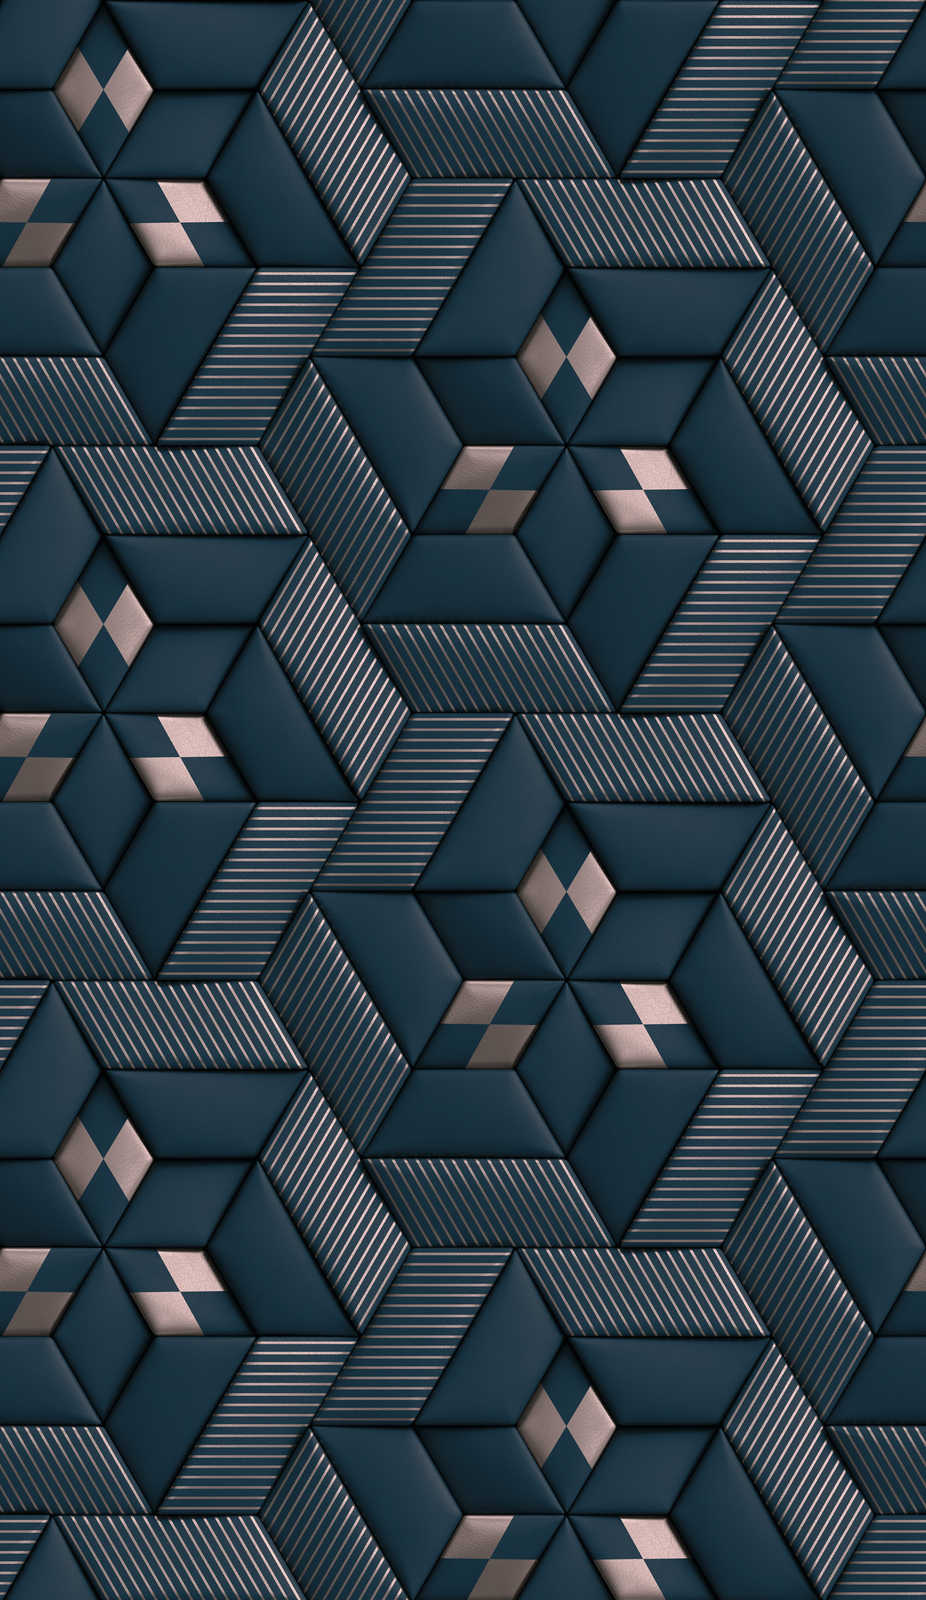             Vliesbehang met abstract 3D patroon - blauw, zilver
        